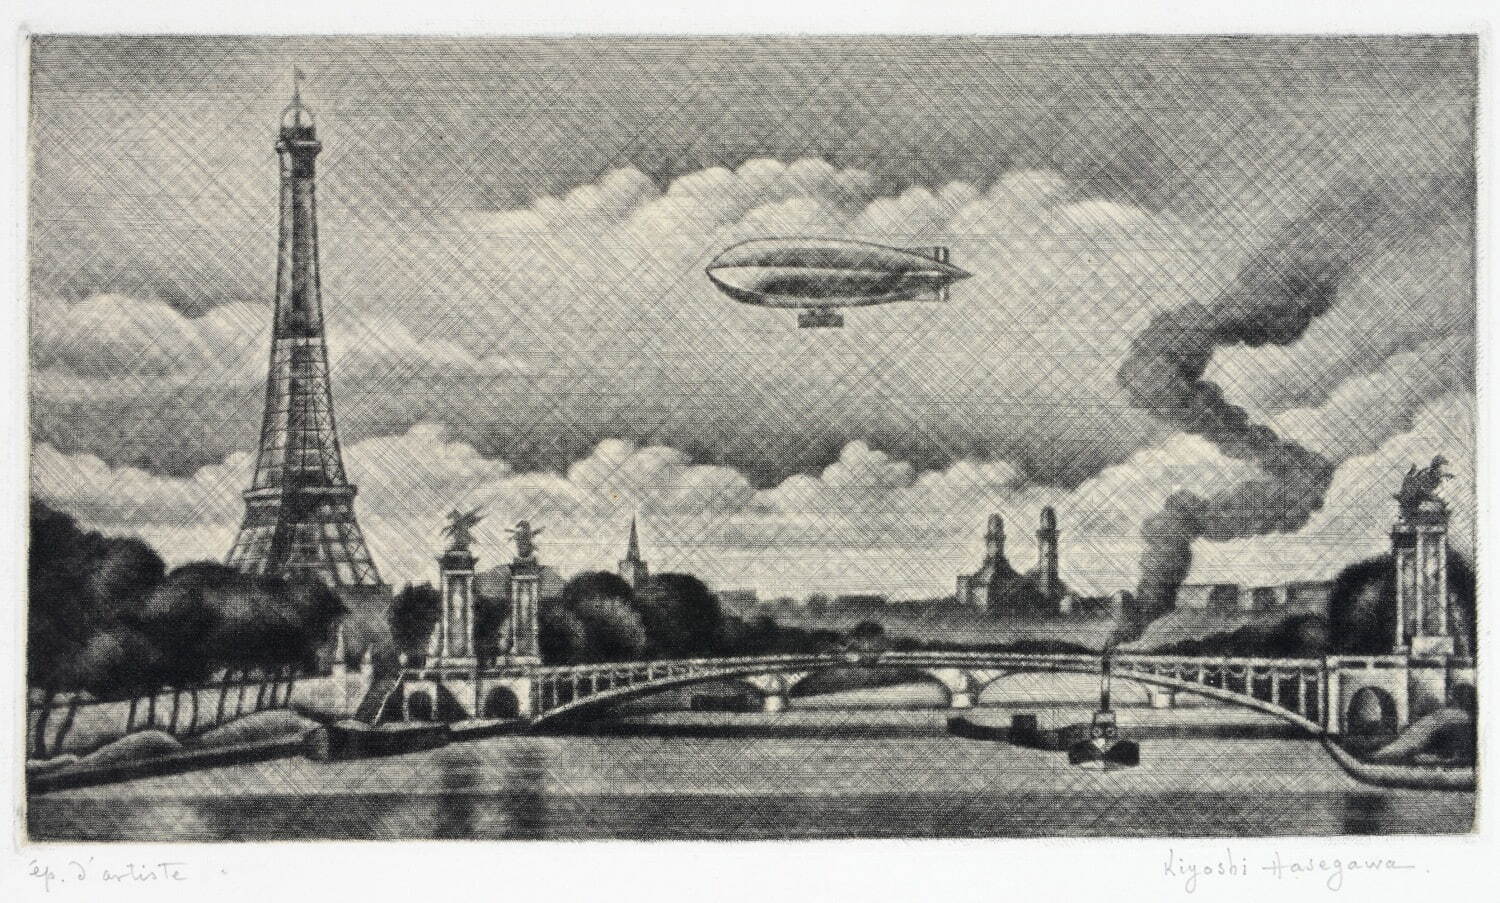 長谷川潔 《アレキサンドル三世橋とフランス飛行船》 1930年 碧南市藤井達吉現代美術館